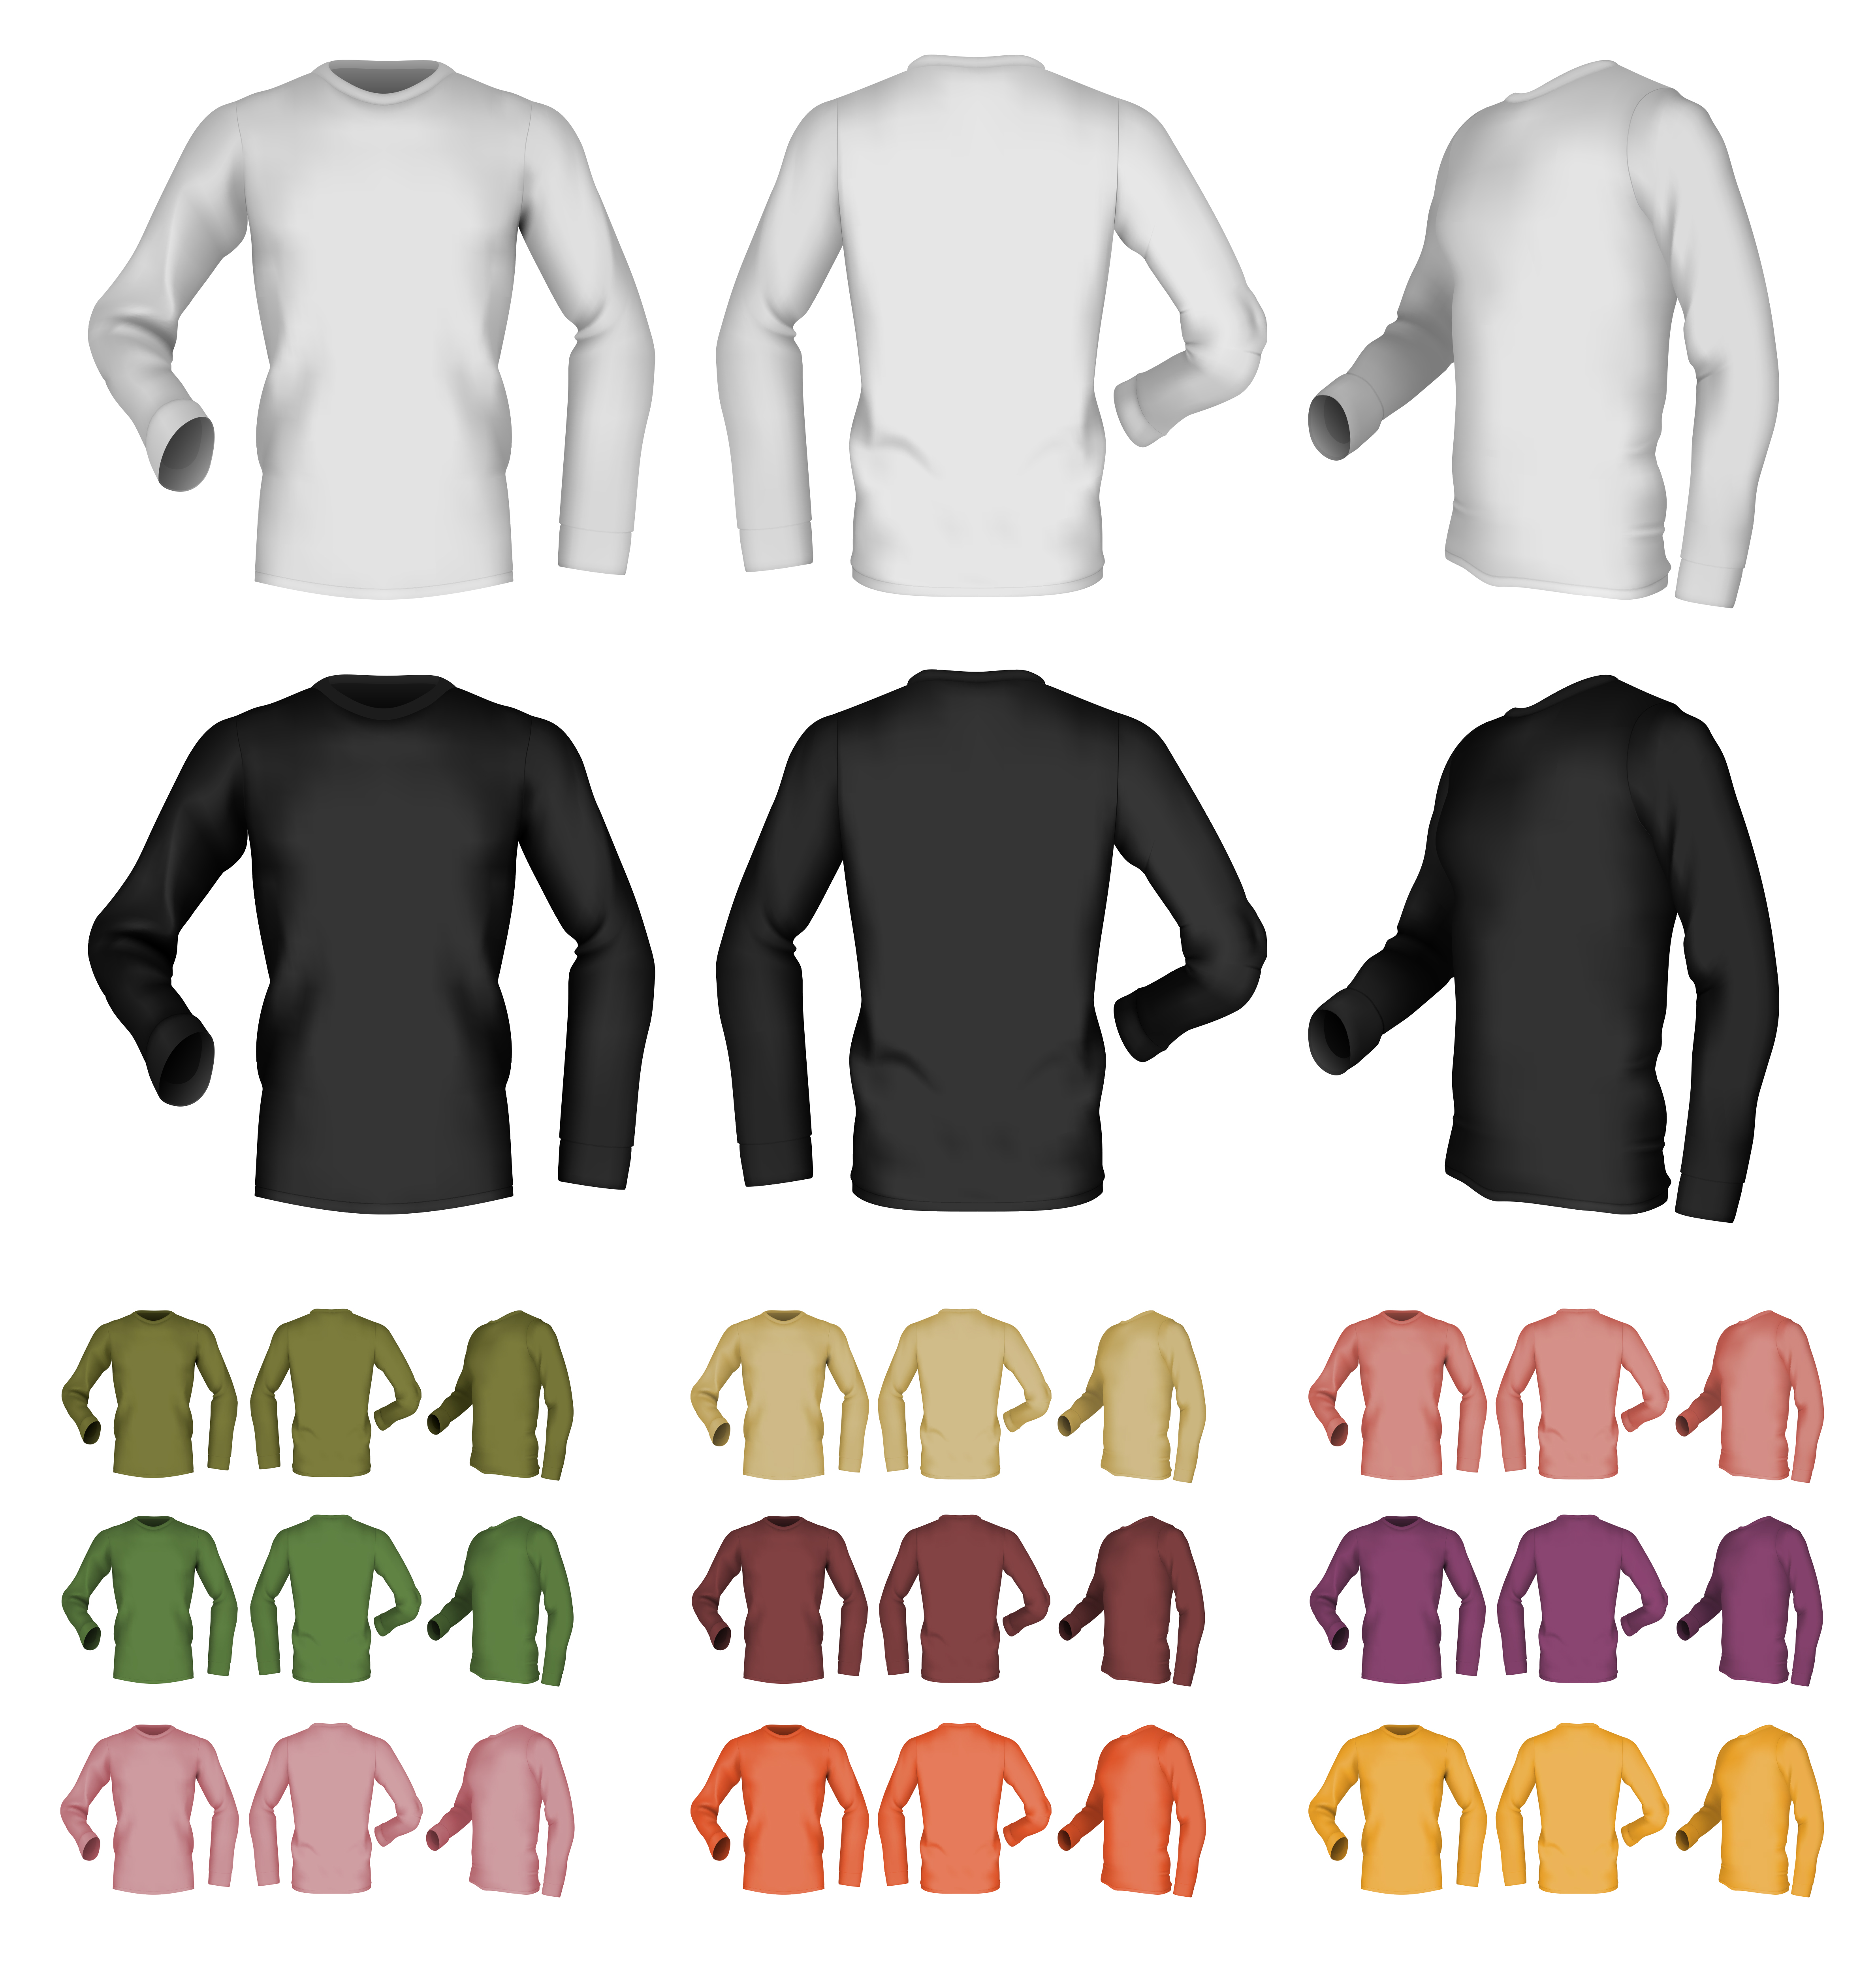 free-vector-long-sleeve-shirt-template-nisma-info